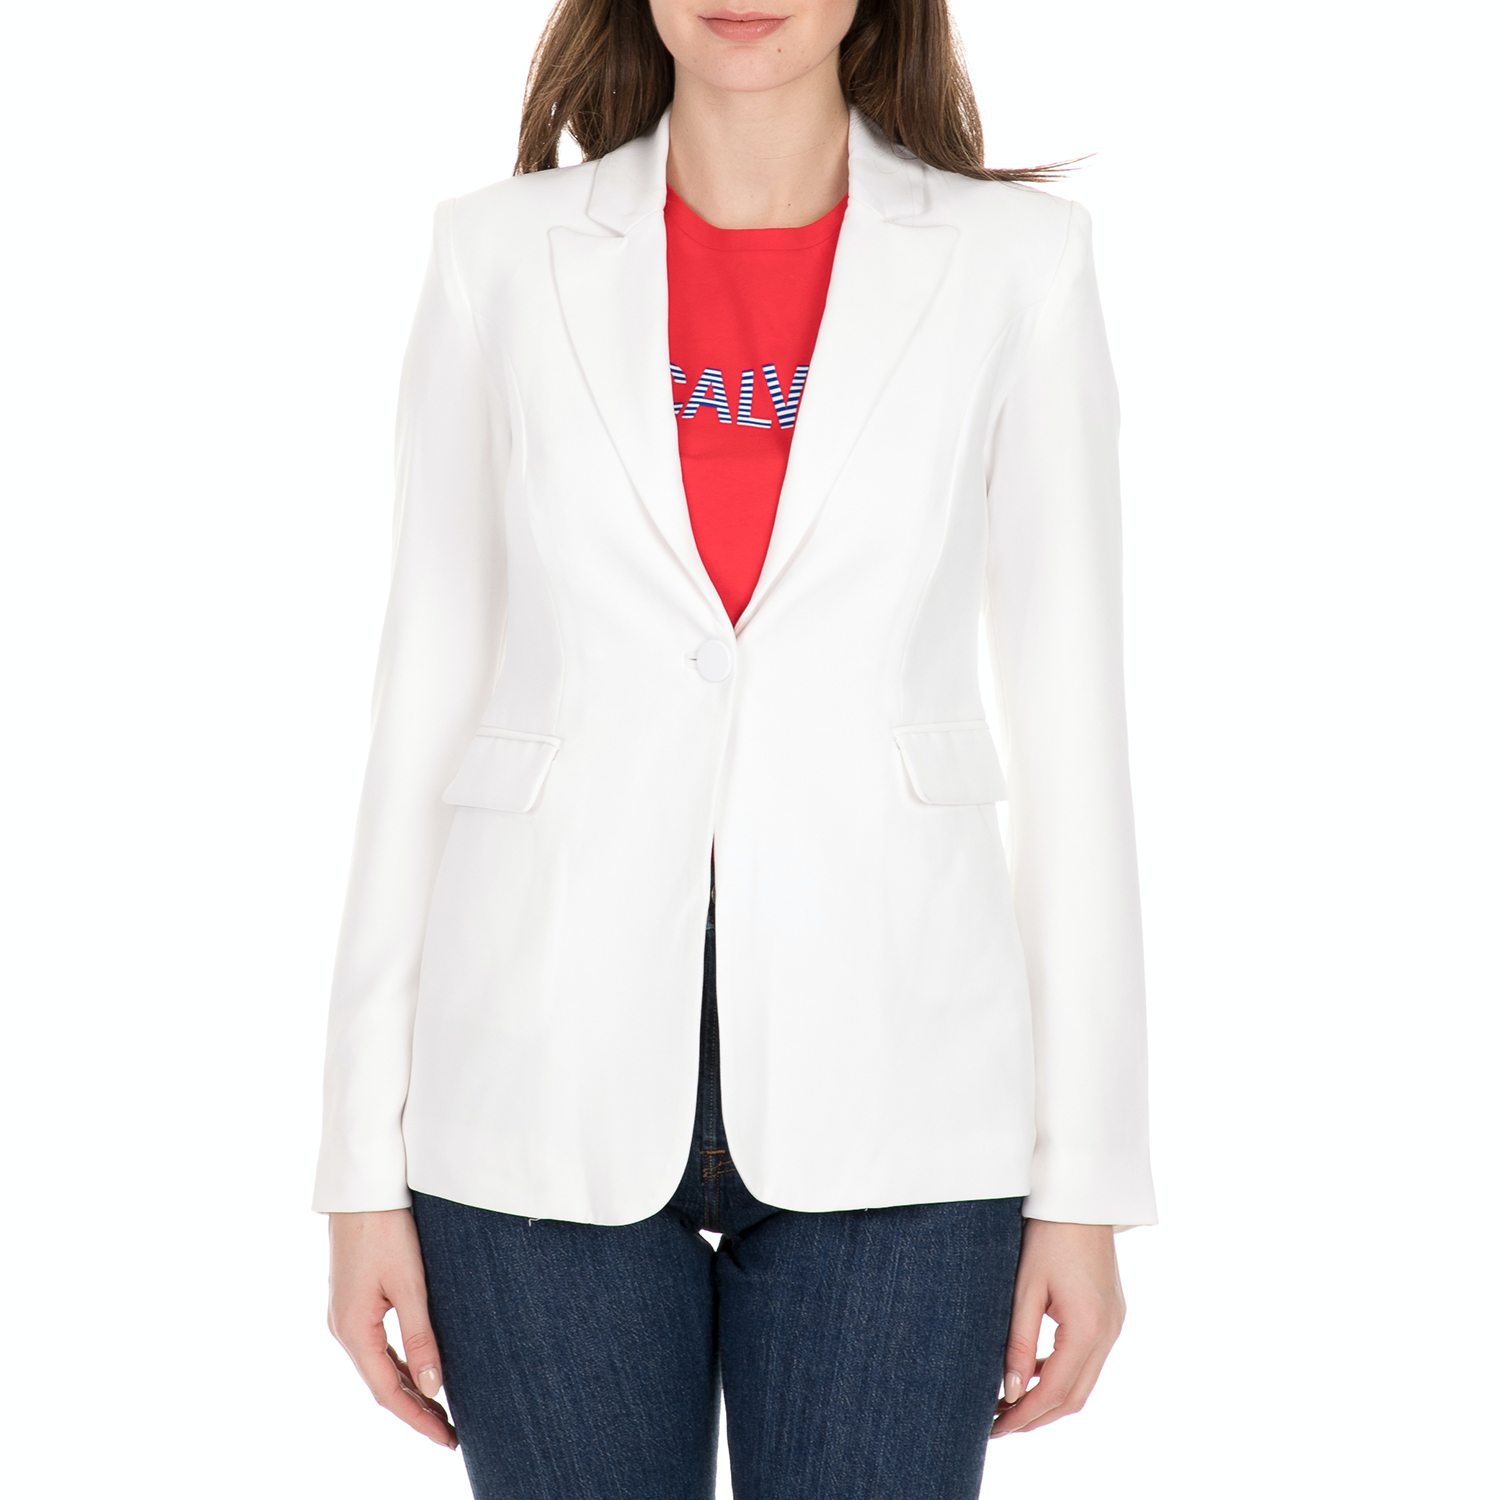 Γυναικεία/Ρούχα/Πανωφόρια/Σακάκια GUESS - Γυναικείο σακάκι GUESS KATY BLAZER λευκό